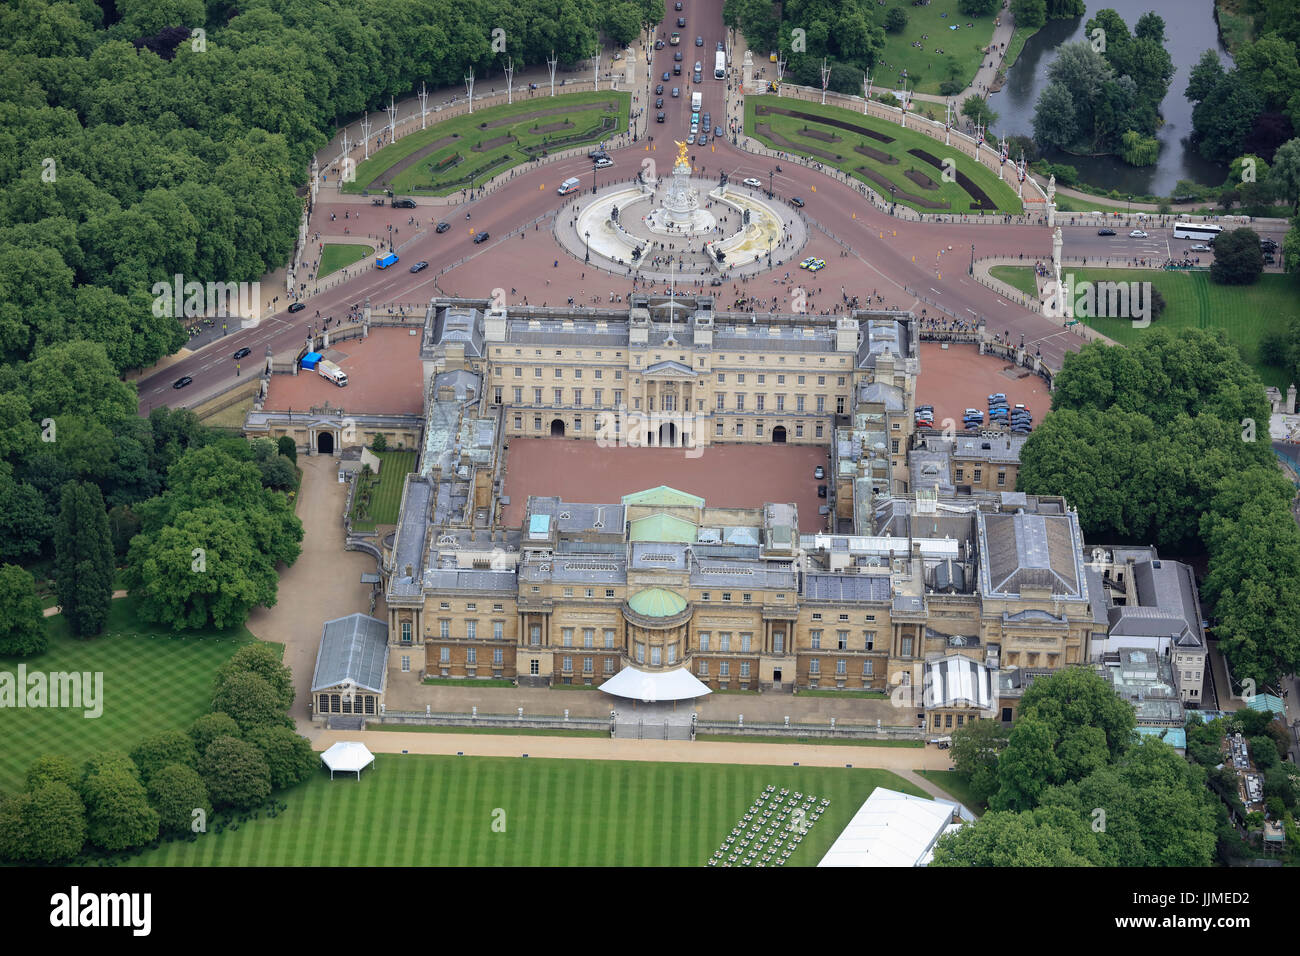 Una veduta aerea della parte posteriore del Buckingham Palace con l'Albert Memorial e la parte superiore del Centro Commerciale visibile Foto Stock